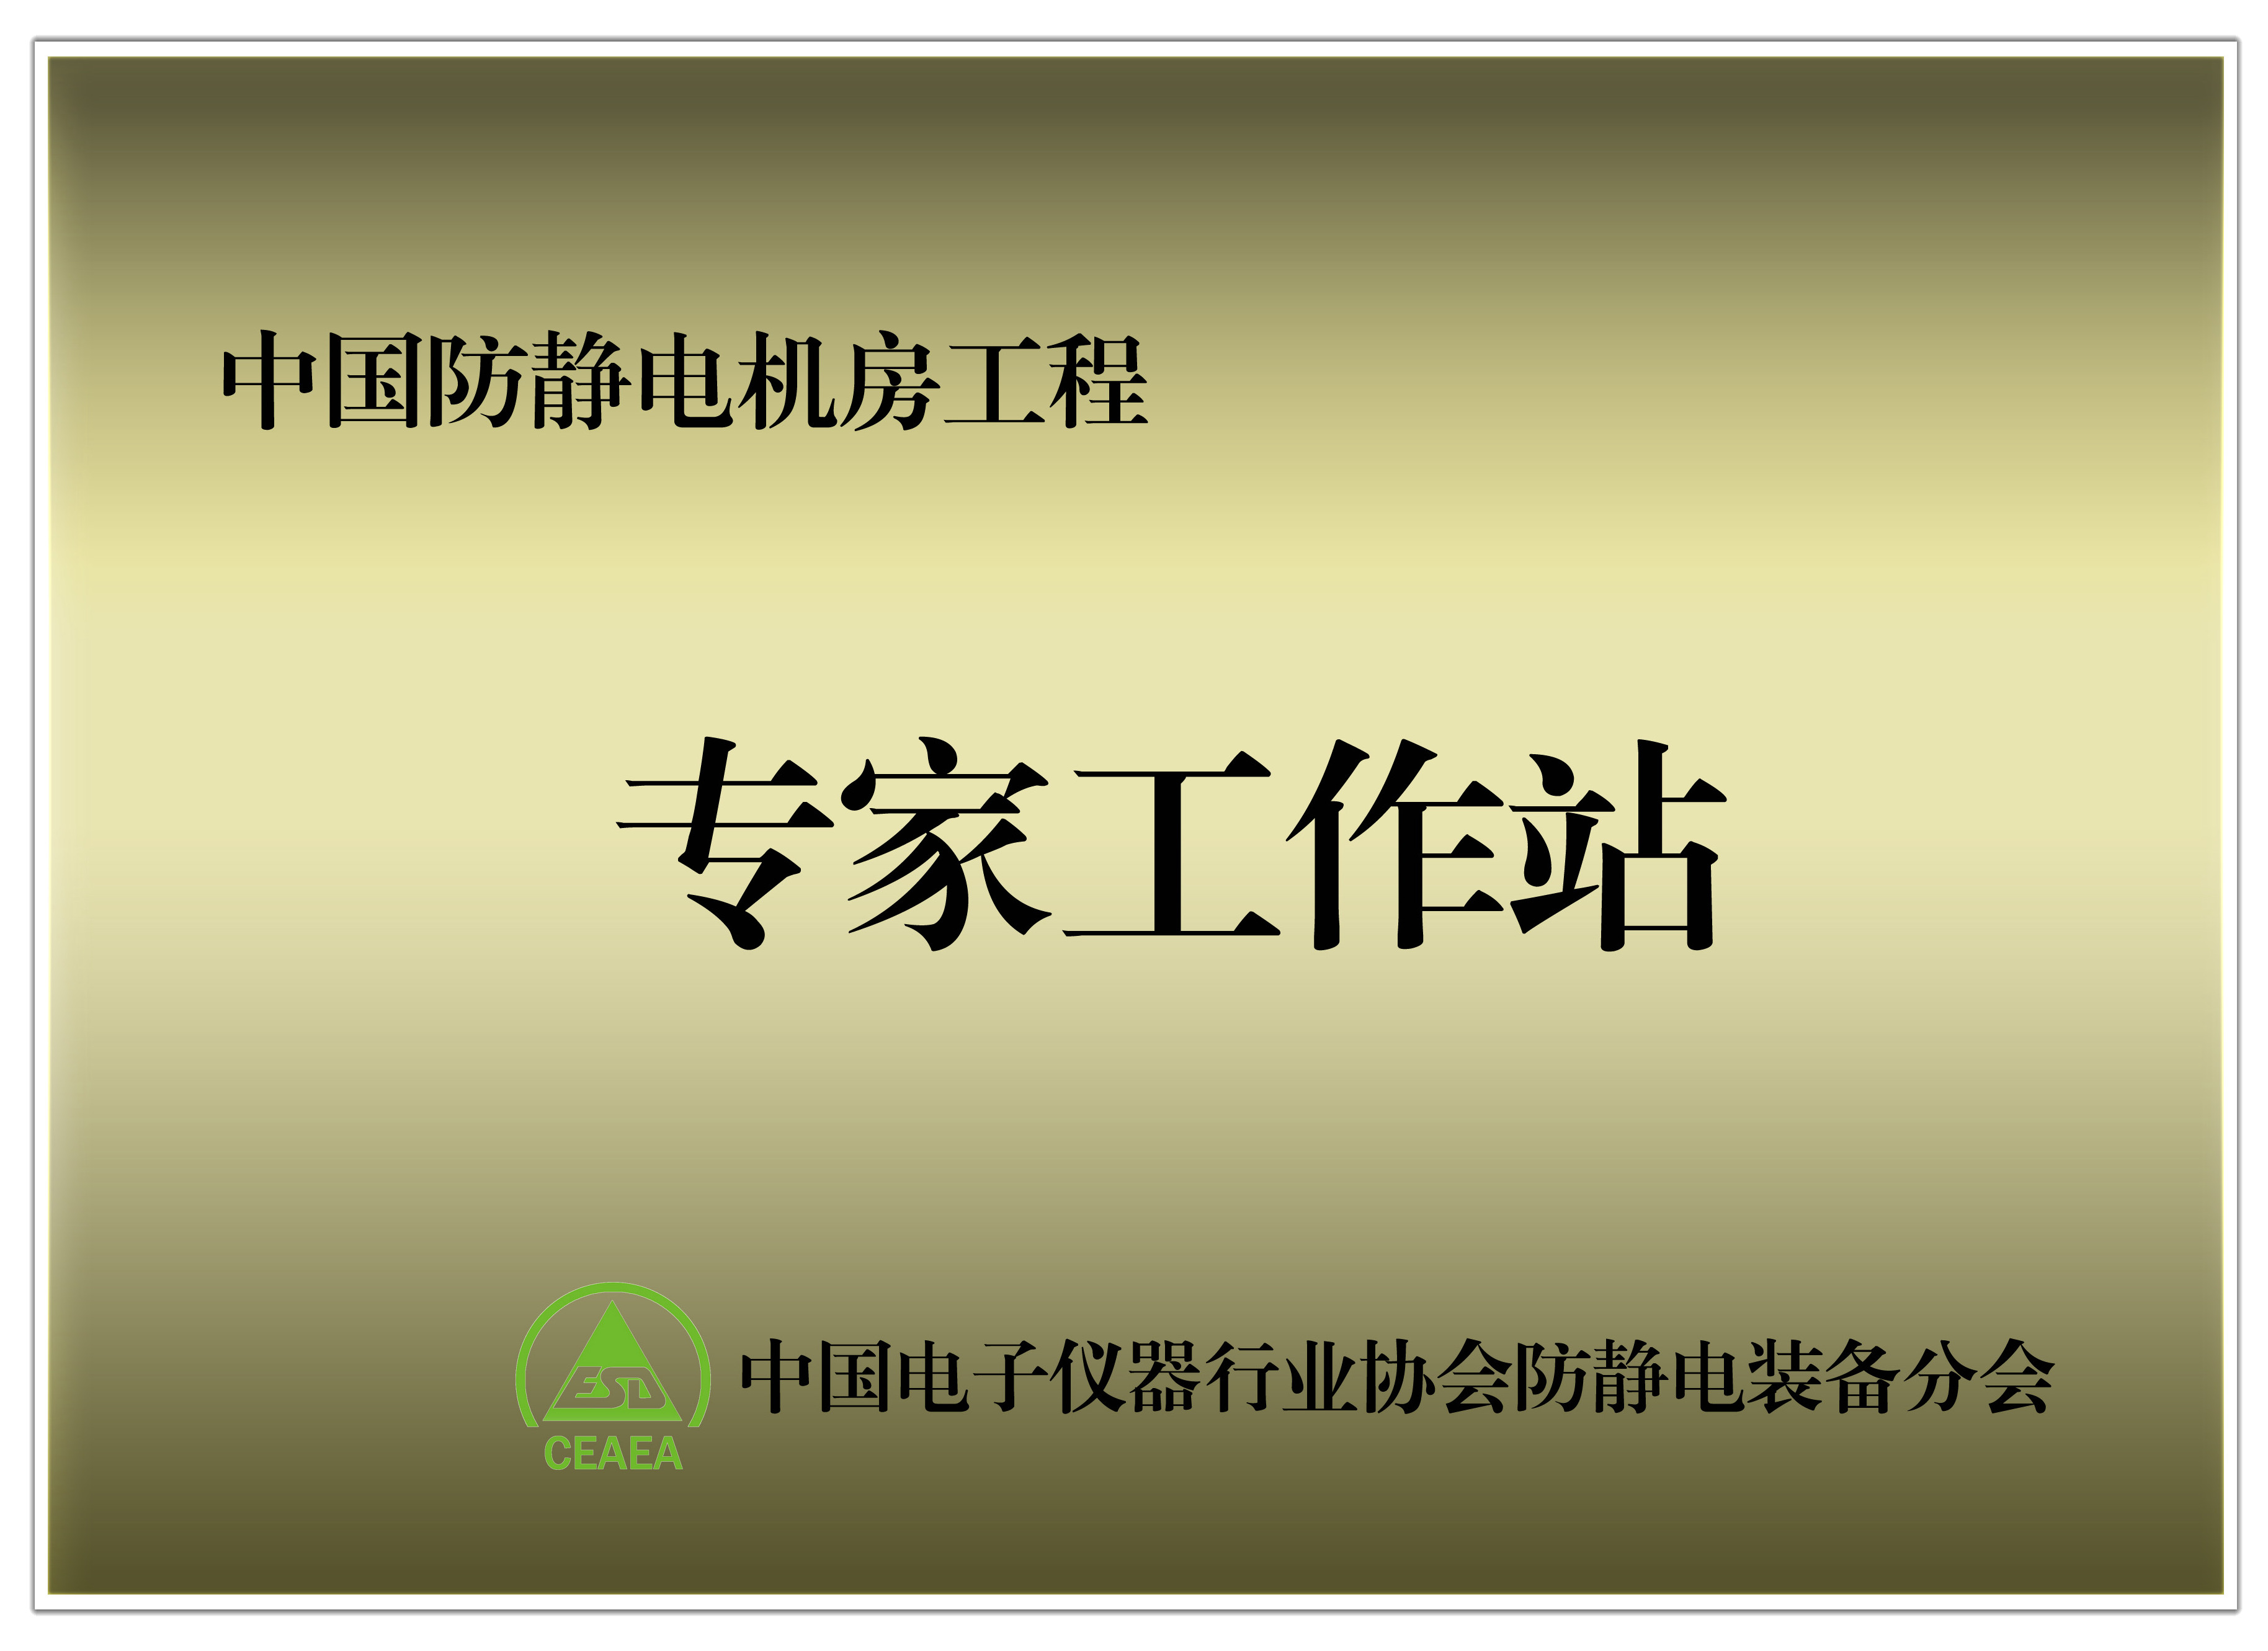 中国防静电机房工程专家工作站授牌单位